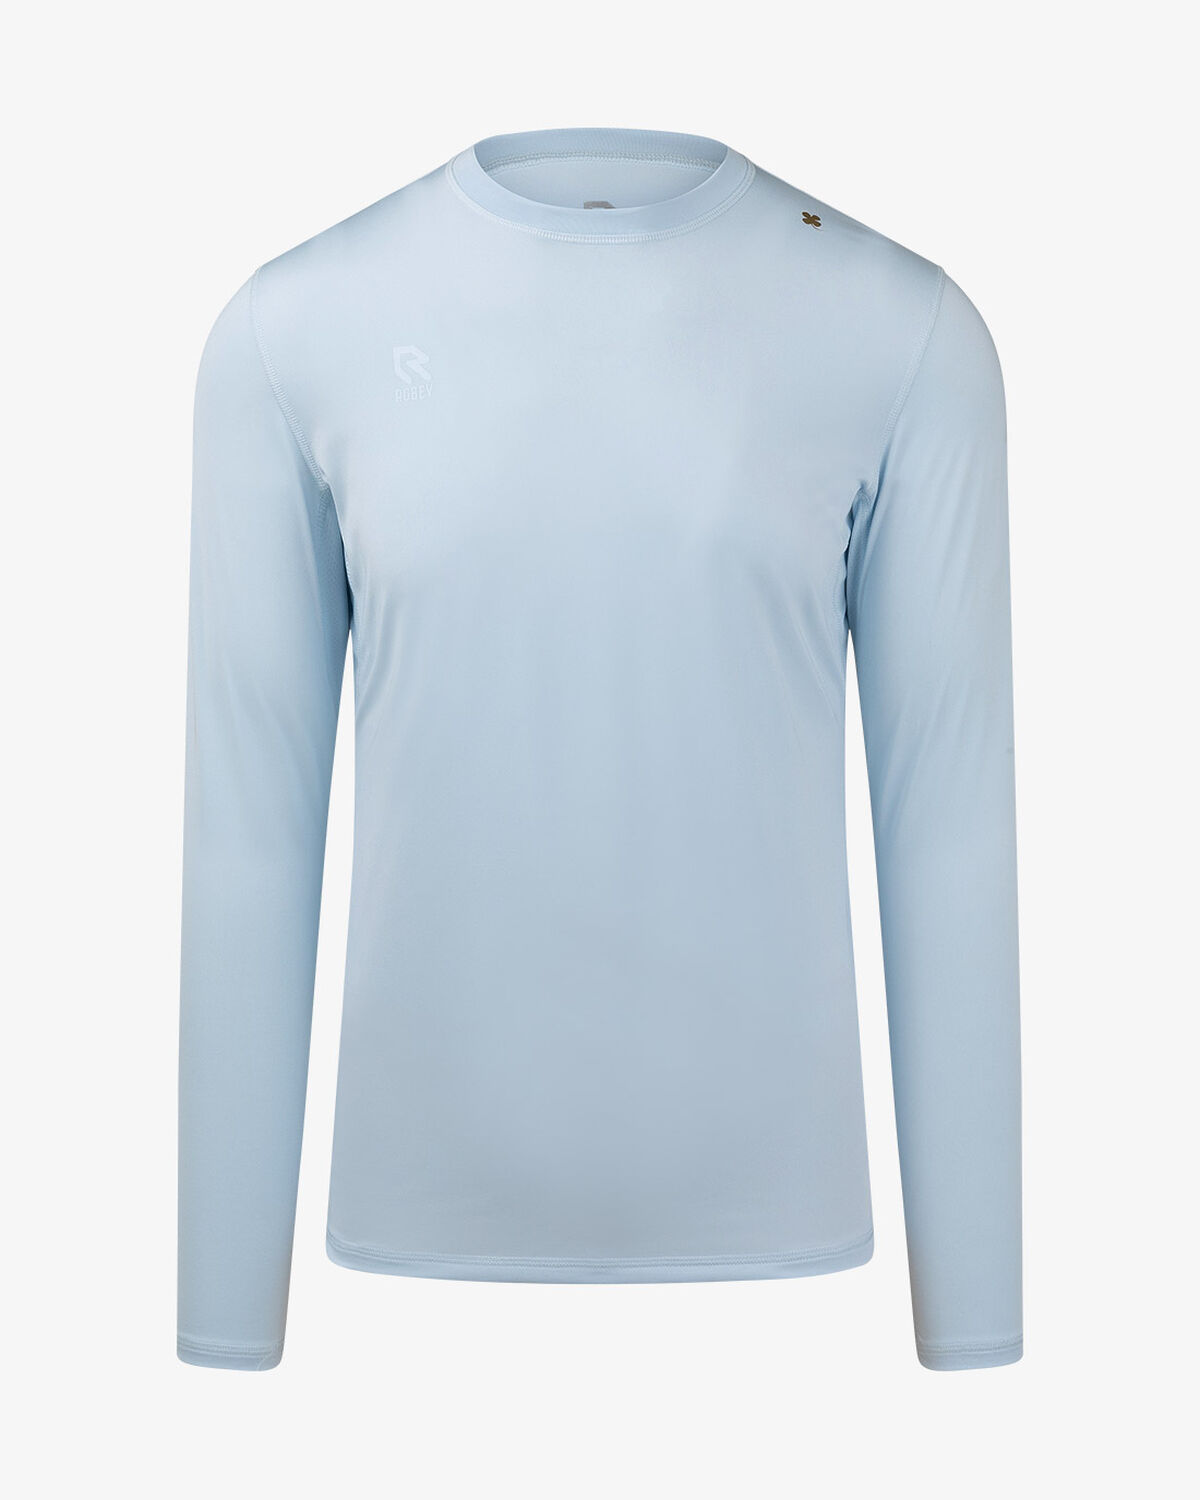 Baselayer Shirt, Artic blue, hi-res